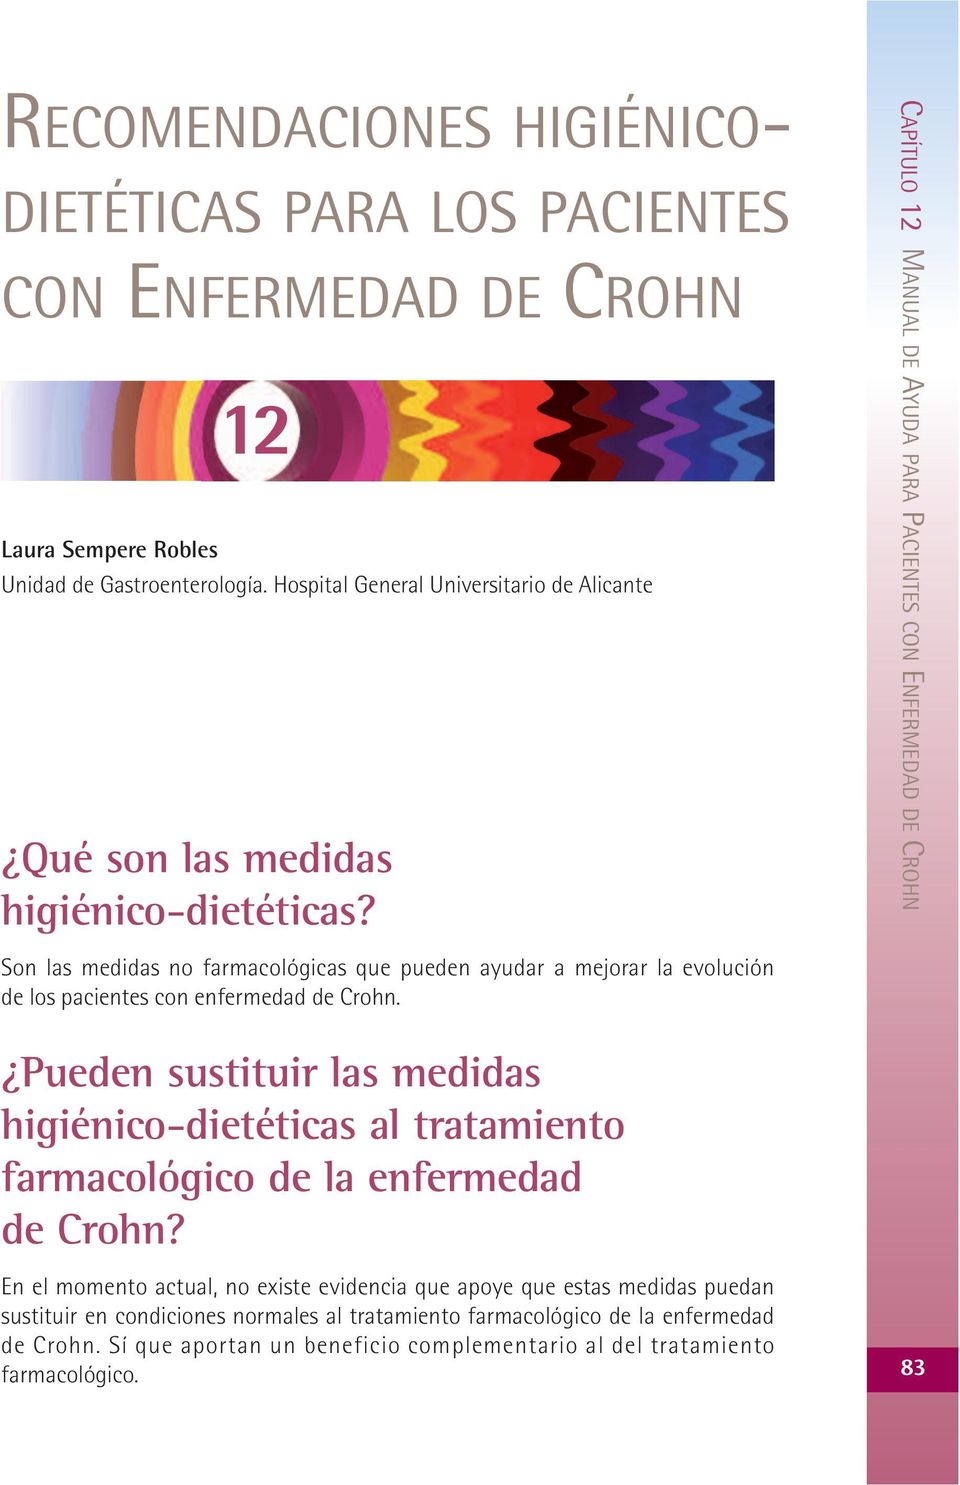 CAPÍTULO 12 MANUAL DE AYUDA PARA PACIENTES CON ENFERMEDAD DE CROHN Son las medidas no farmacológicas que pueden ayudar a mejorar la evolución de los pacientes con enfermedad de Crohn.